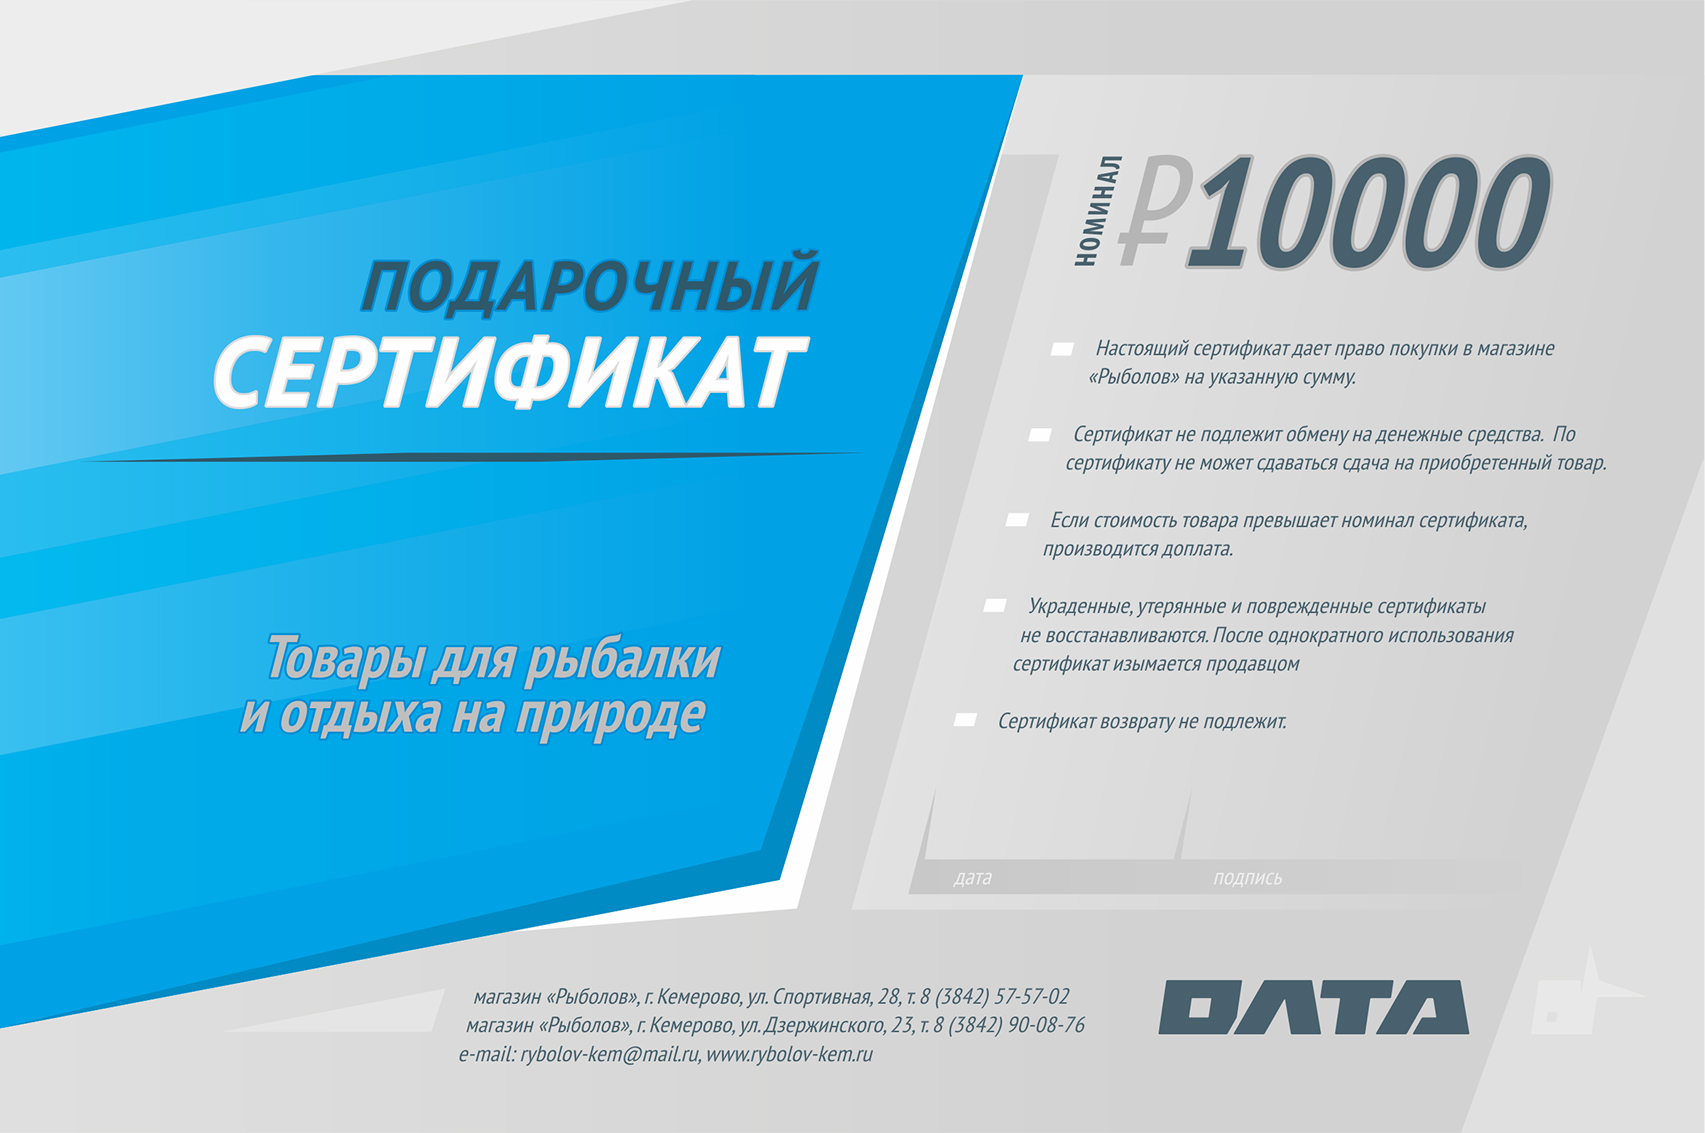 Подарочный сертификат, номинал 10000 рублей